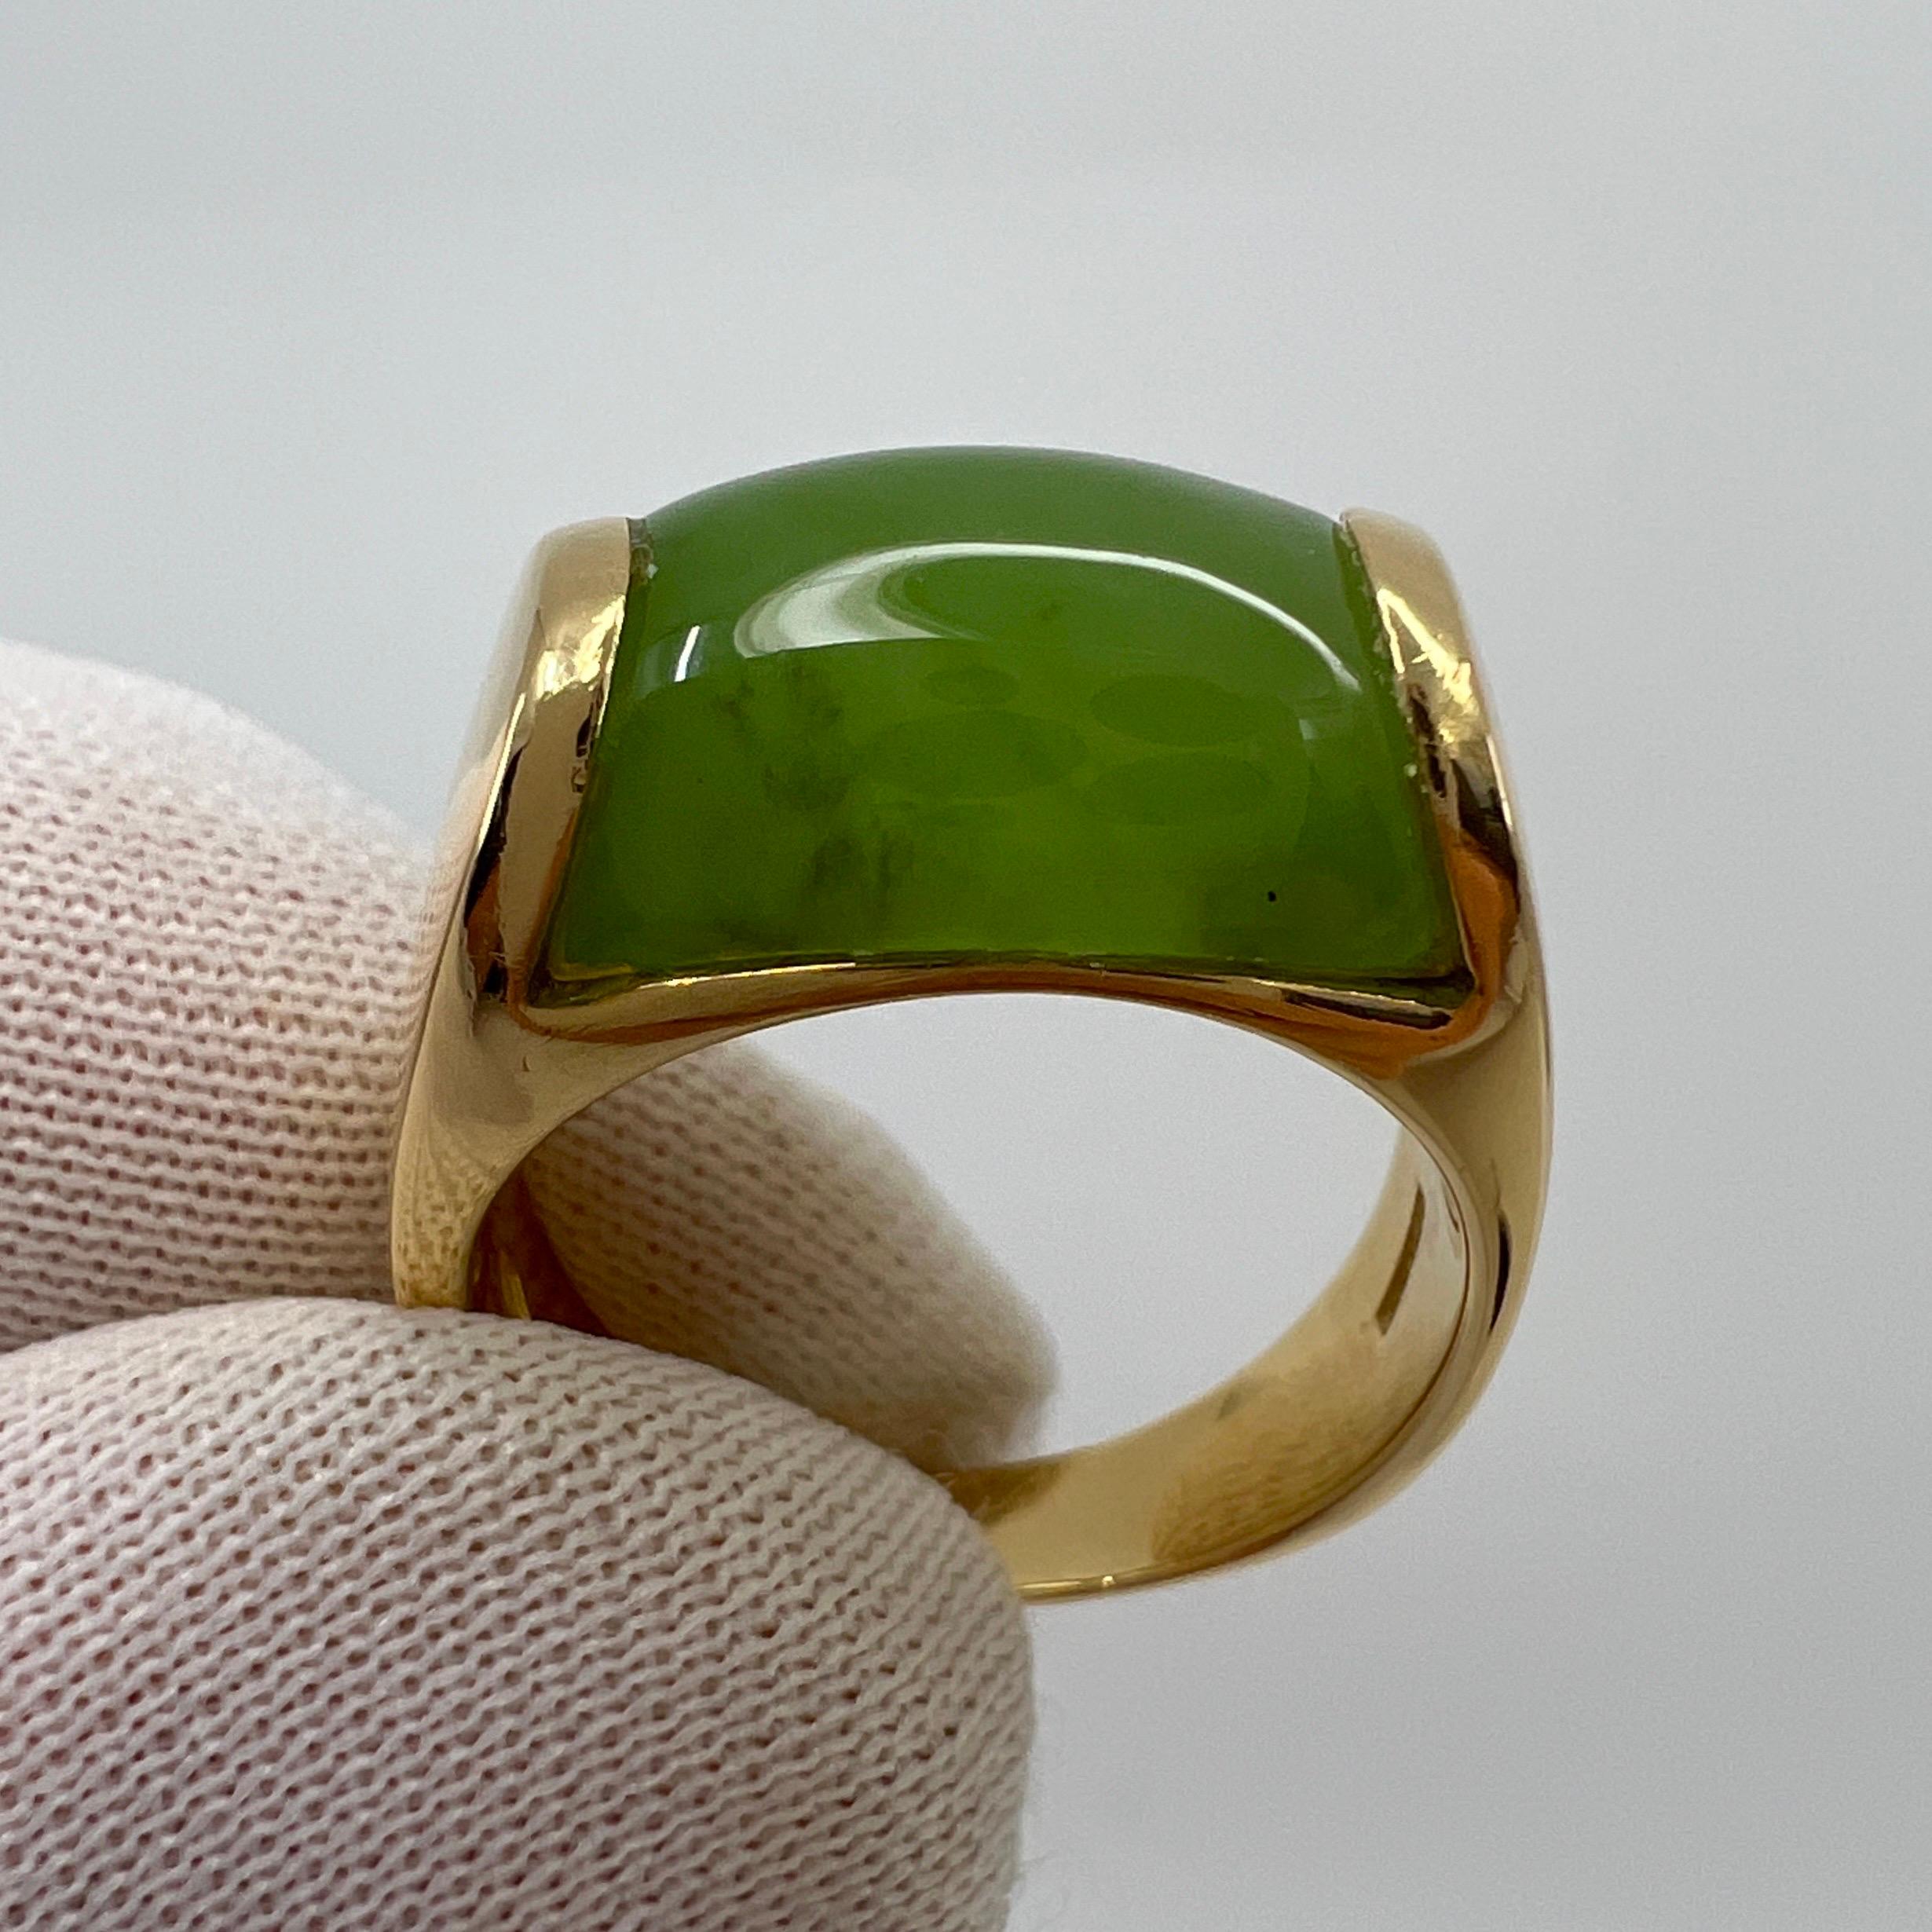 Rare Bvlgari Bulgari Green Jade Tronchetto 18 Karat Yellow Gold Ring with Box 2